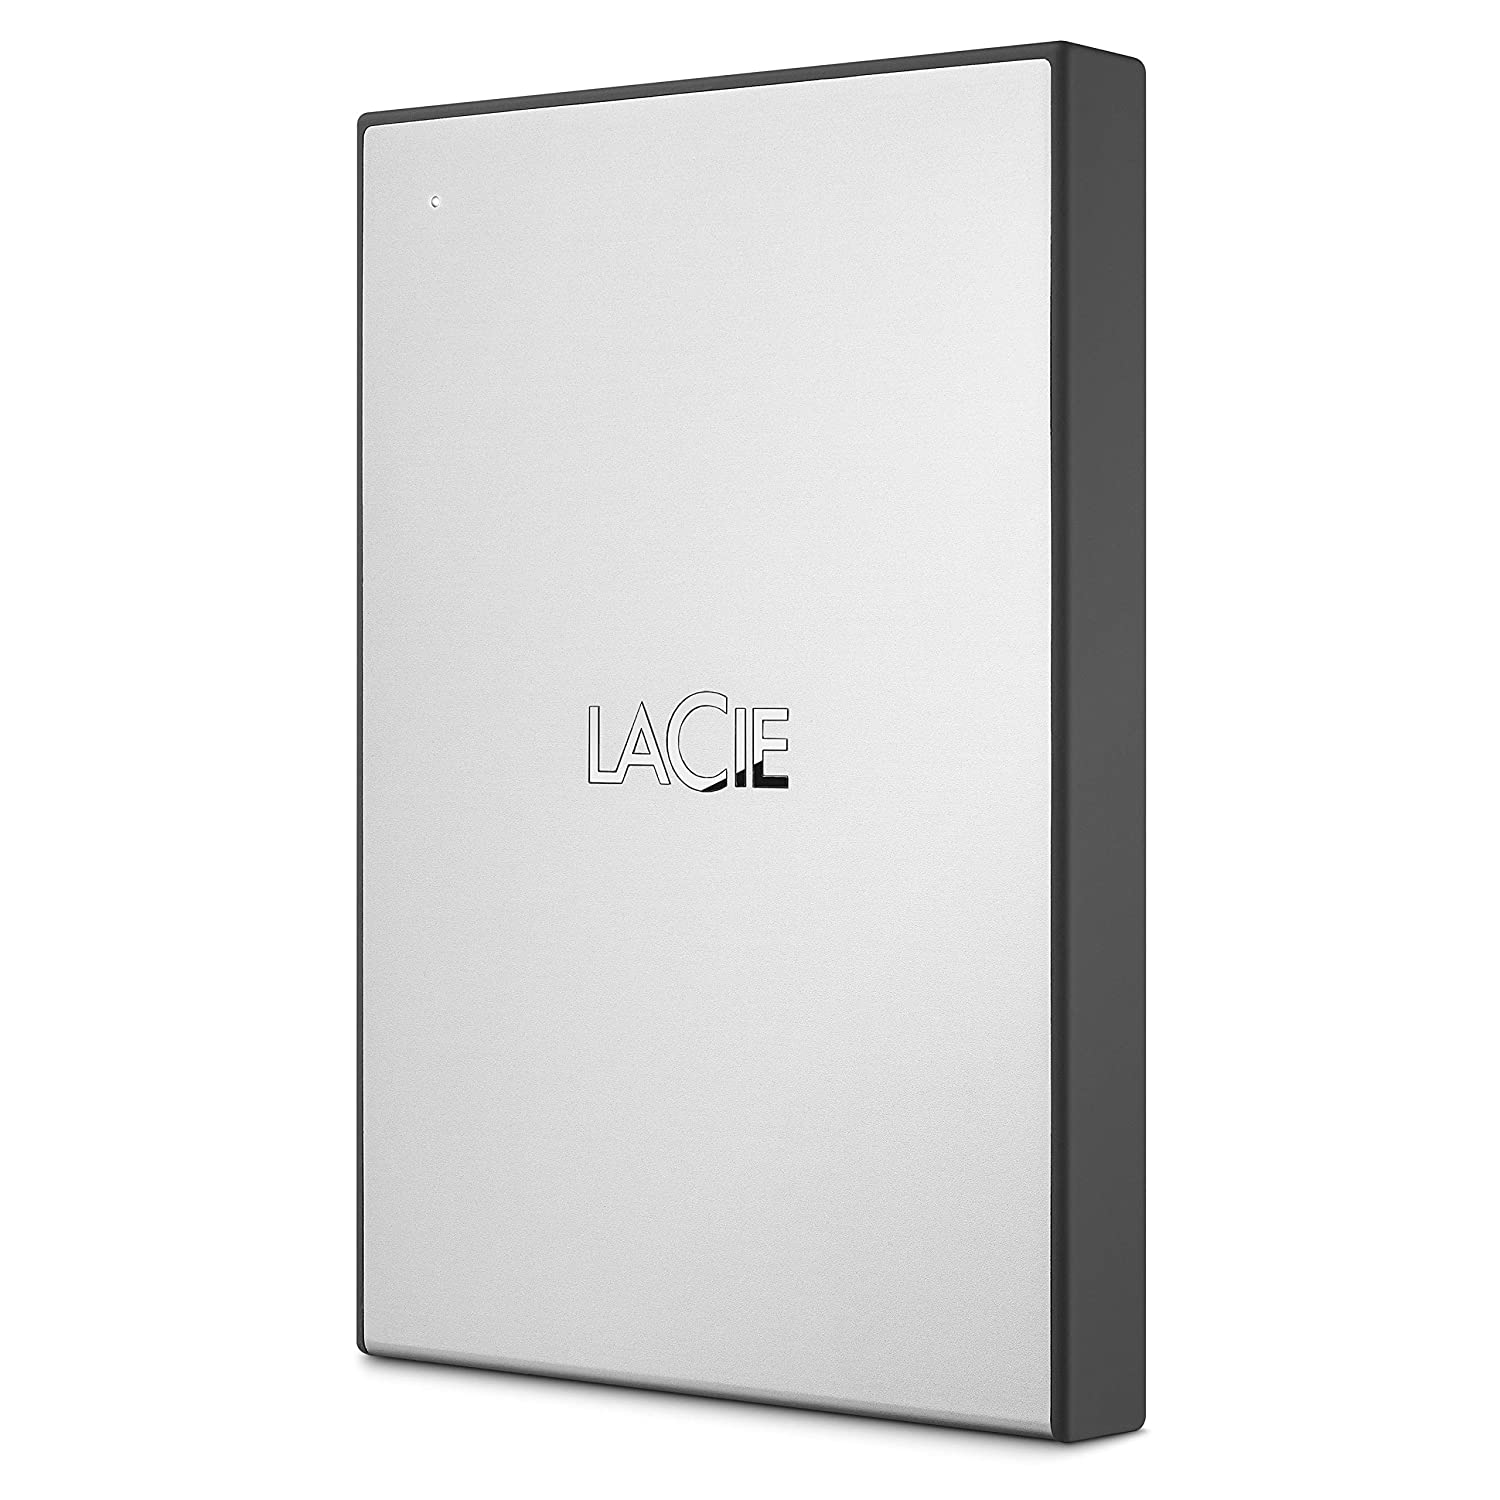 lacie 2 tb external hard drive